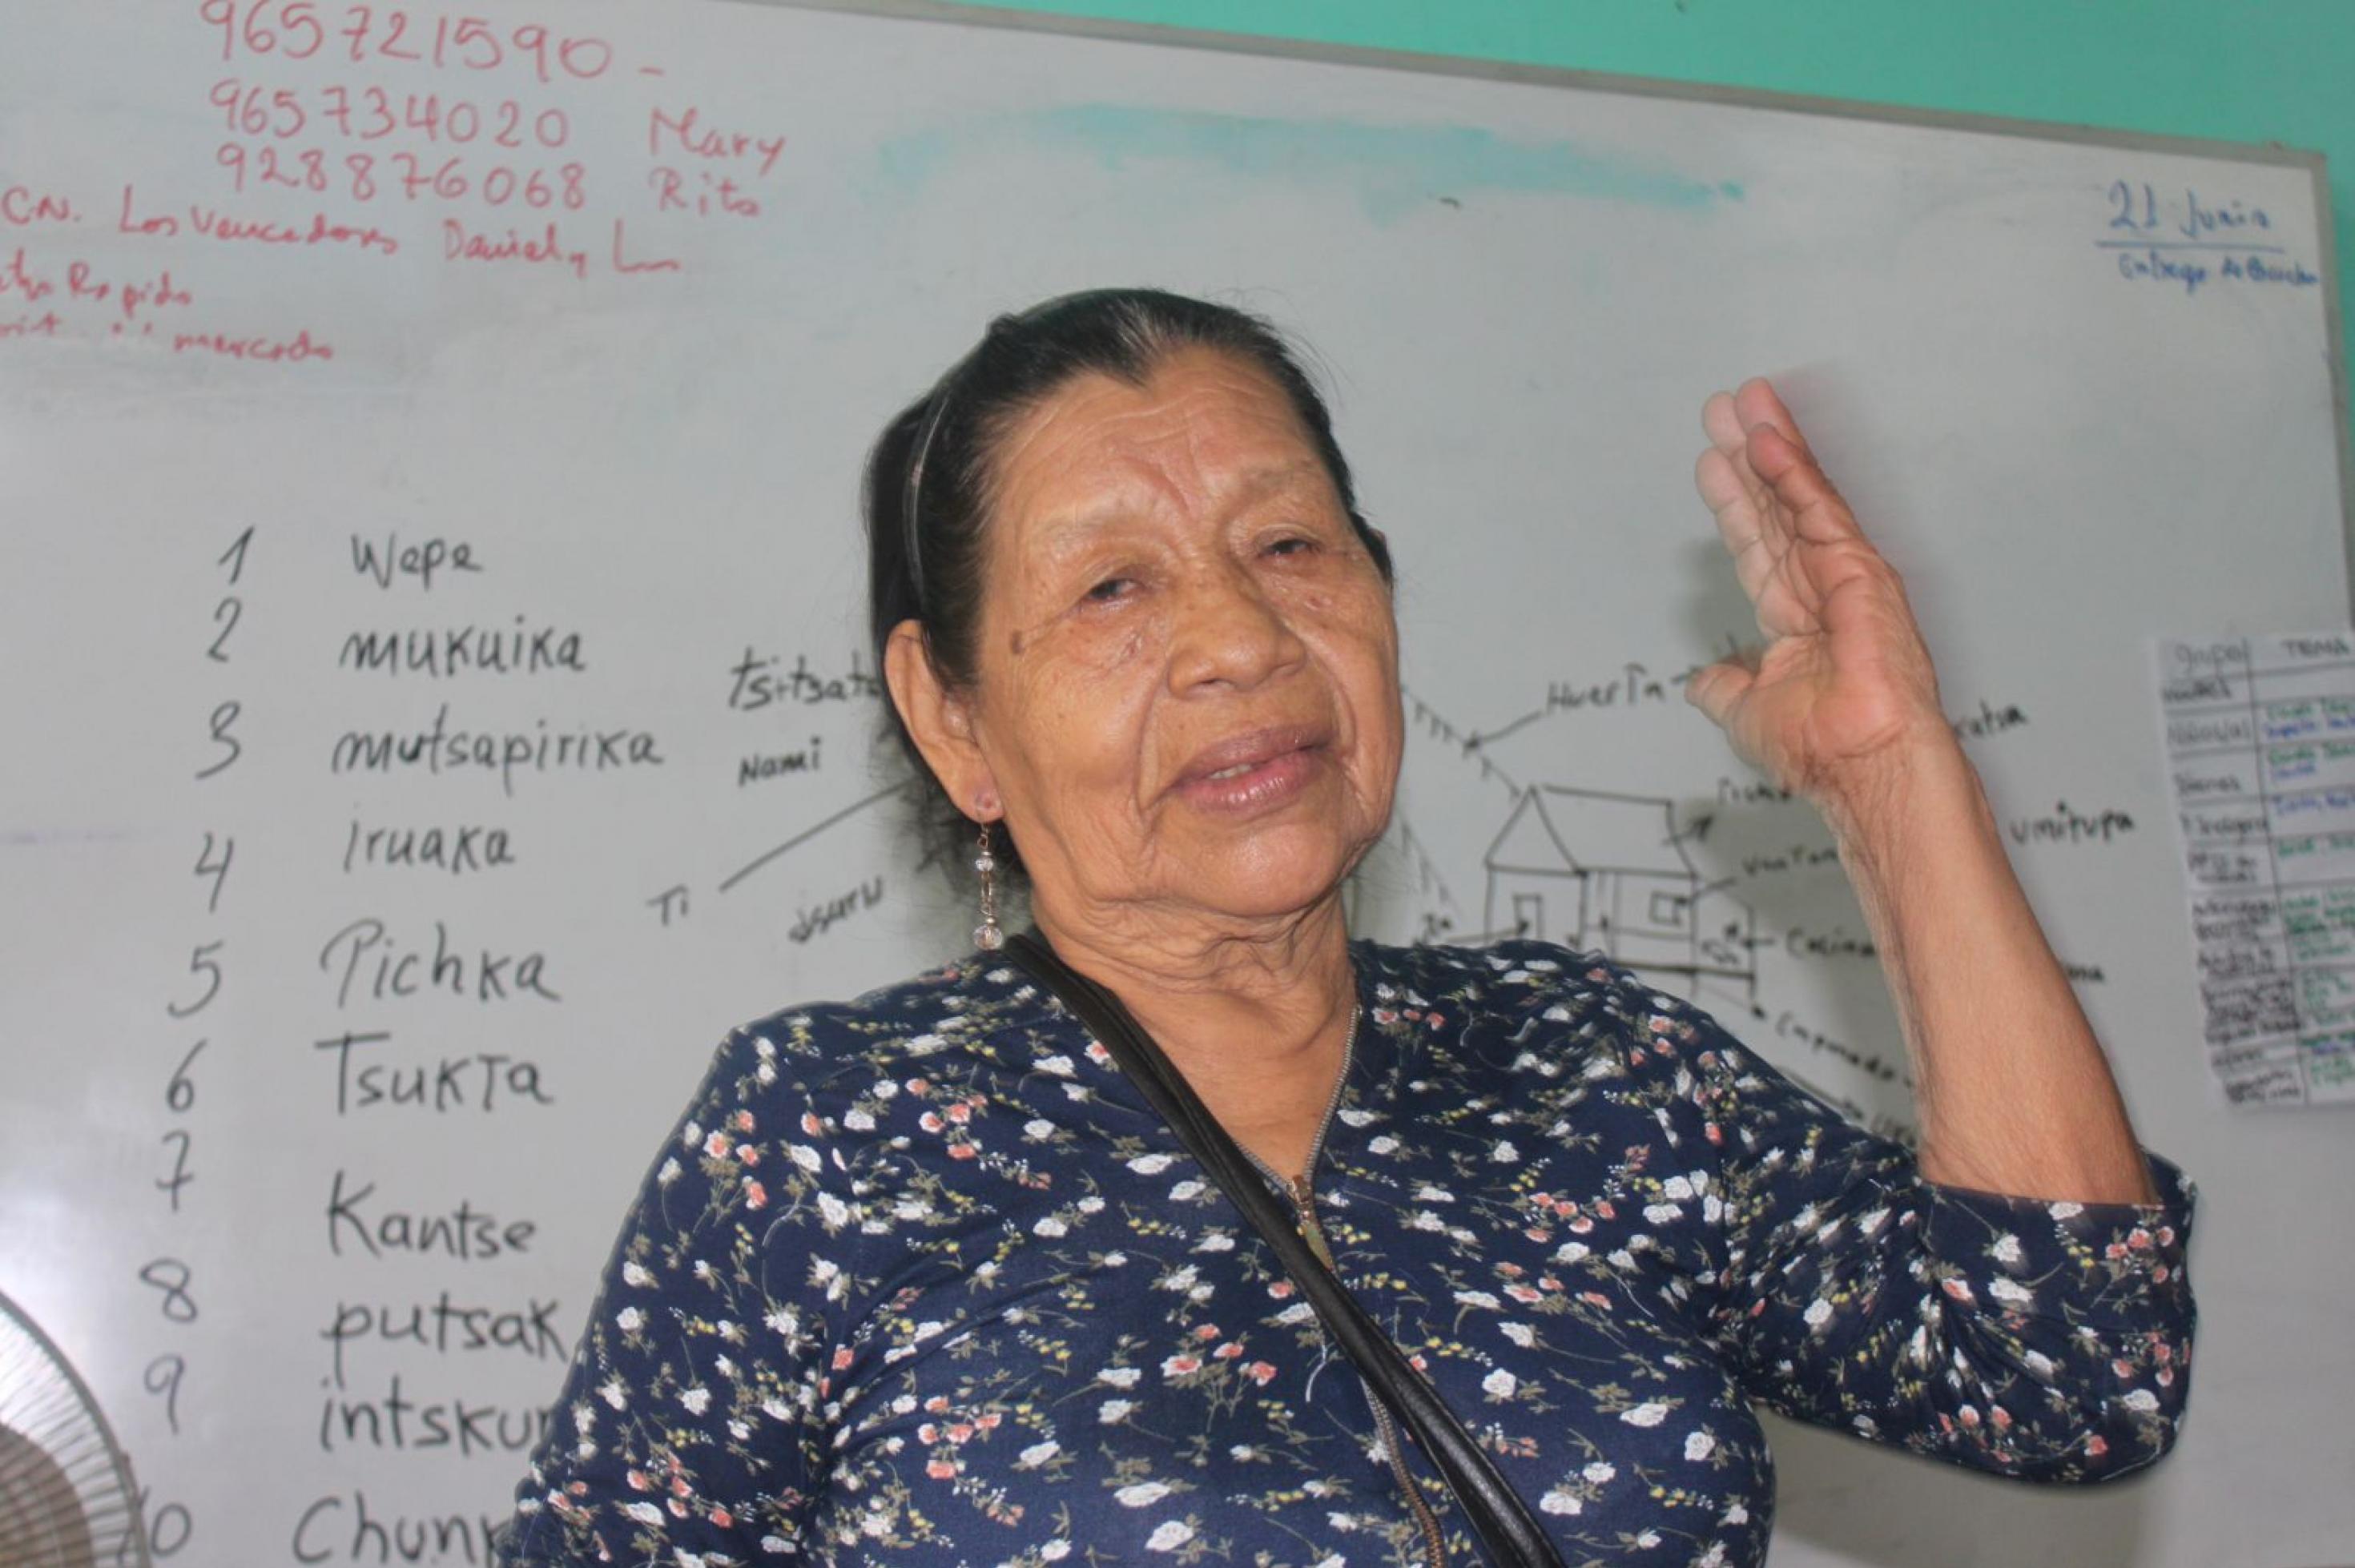 Alte Frau mit runzligem Gesicht, schwarzem, zurückgekämmtes Haar, steht vor einem Whiteboard, auf dem Wörter in der Kukama-Sprache stehen. Sie gestikuliert mit ihrer Hand.